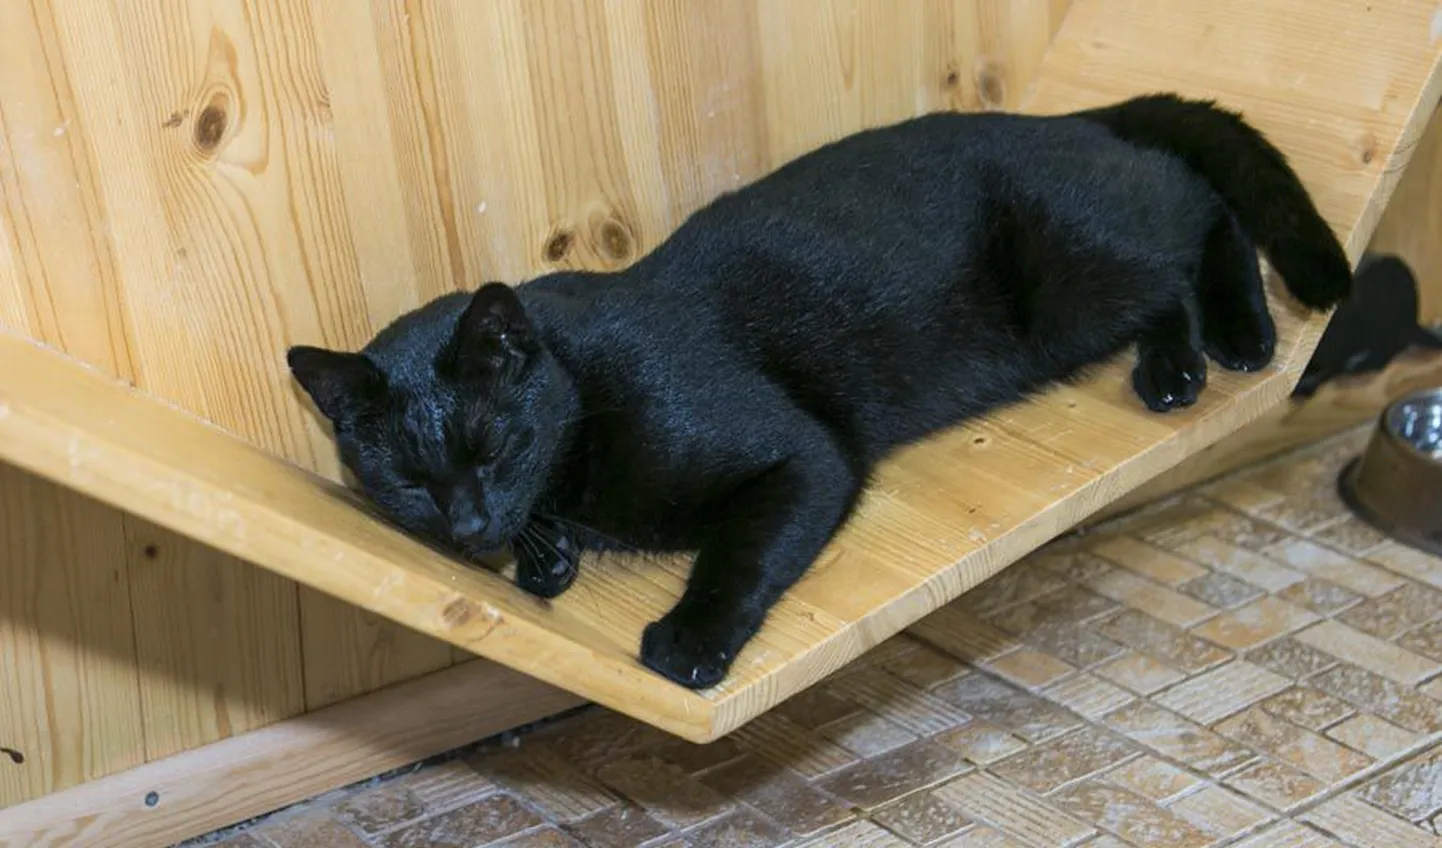 Ka mustakarvaline kass on kõigest kass.